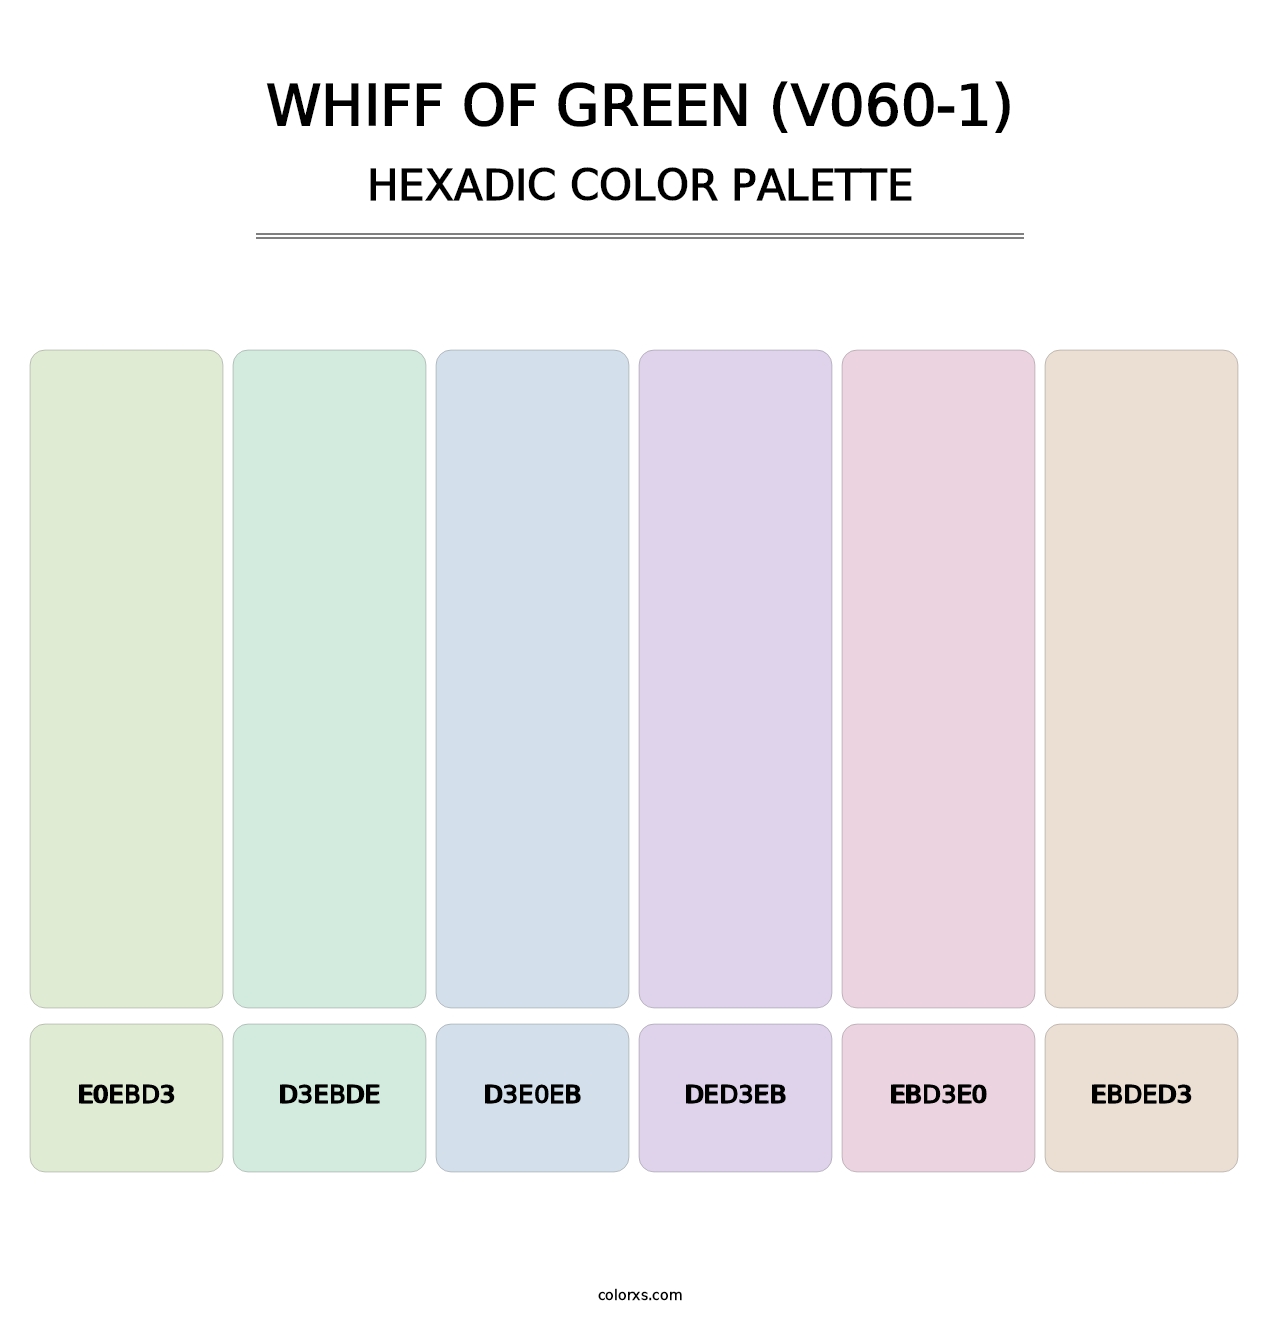 Whiff of Green (V060-1) - Hexadic Color Palette